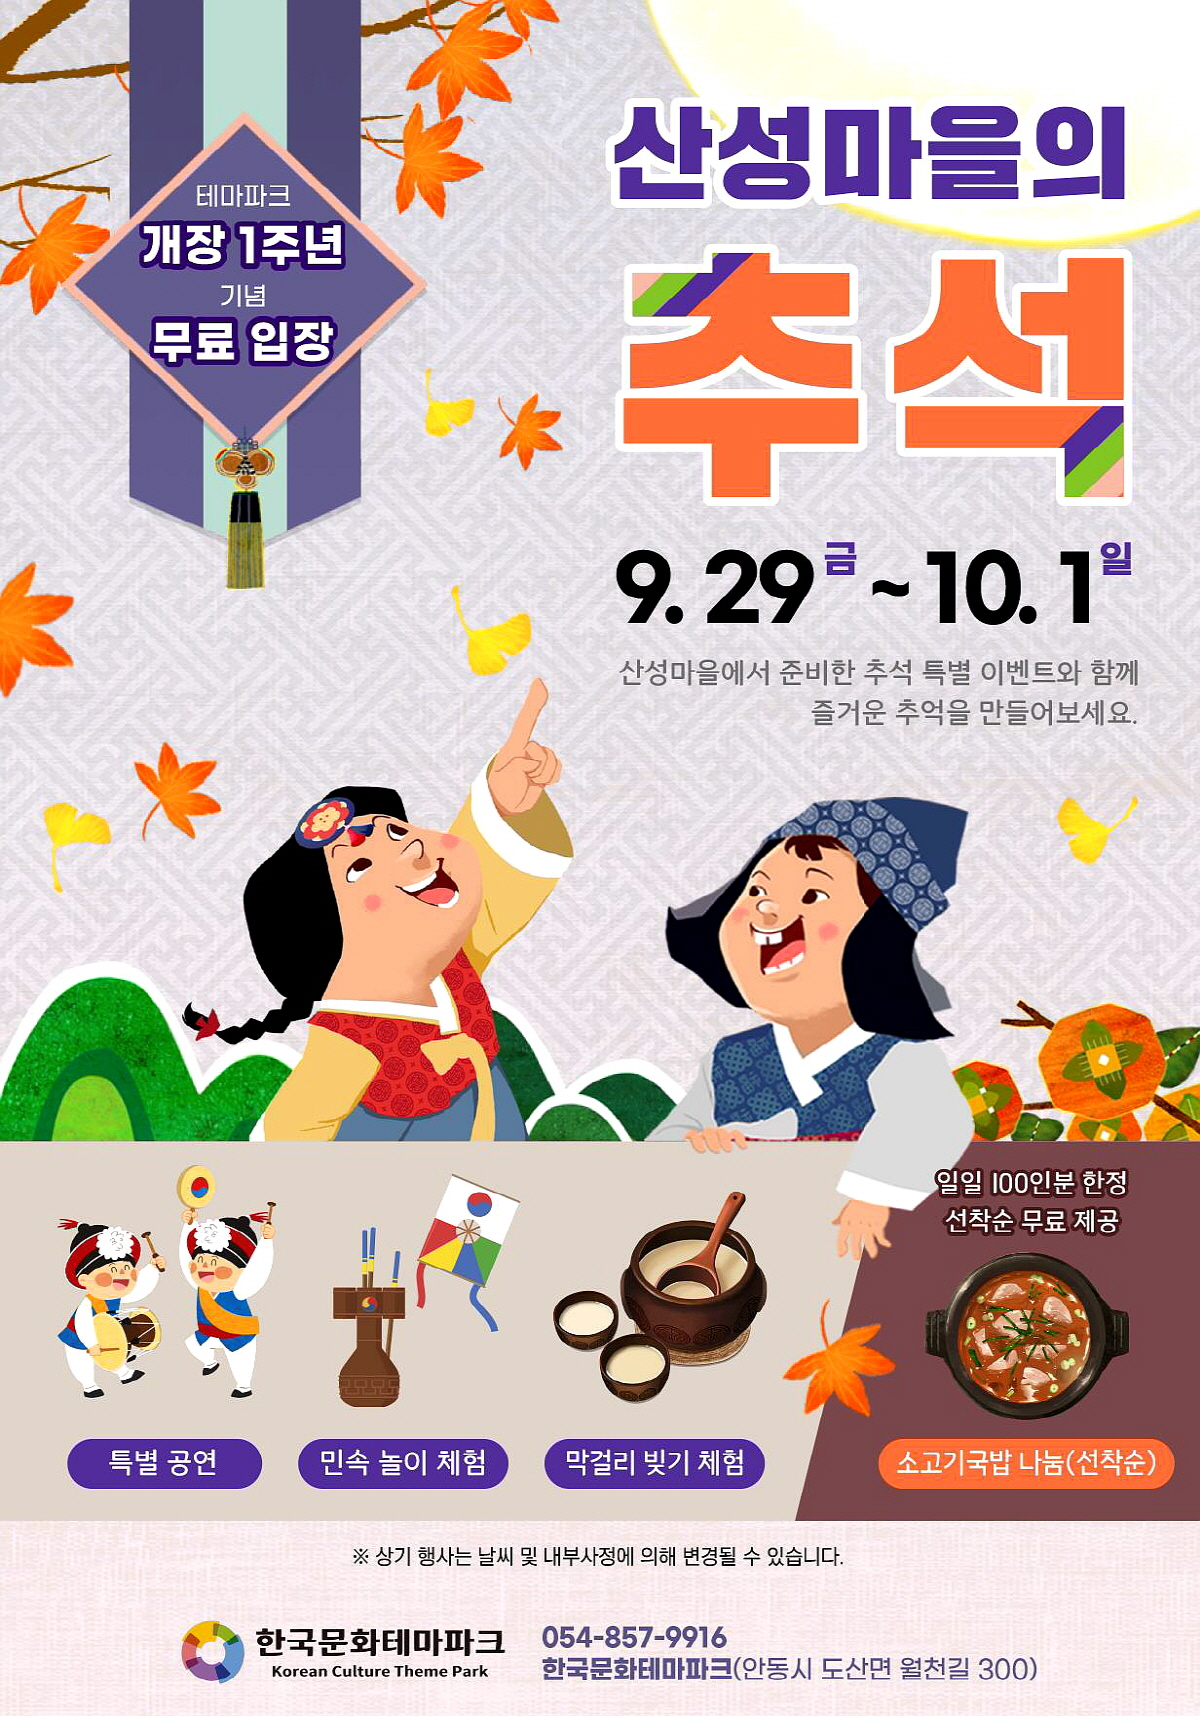 안동시, 한국문화테마파크 추석연휴 특별이벤트 개최